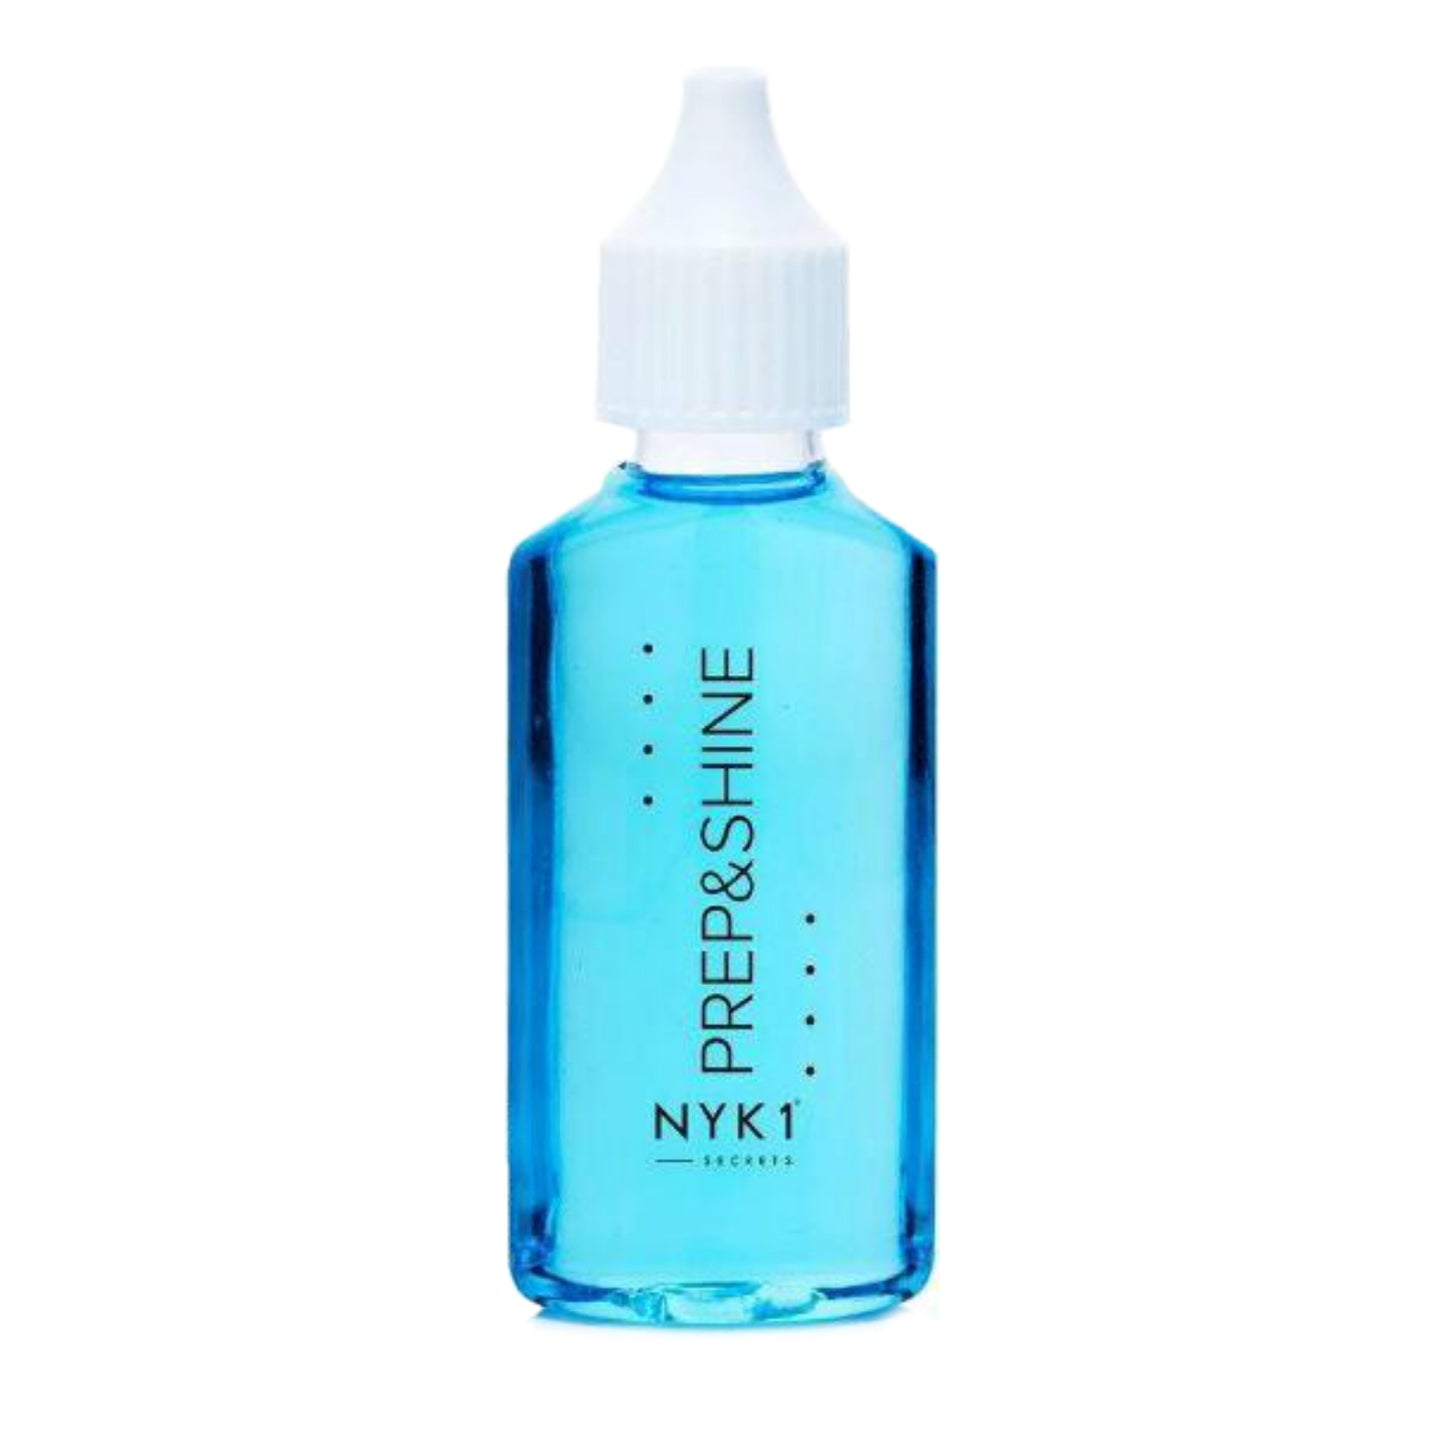 Nail Sanitiser Cleanser Prep&Shine from NYK1